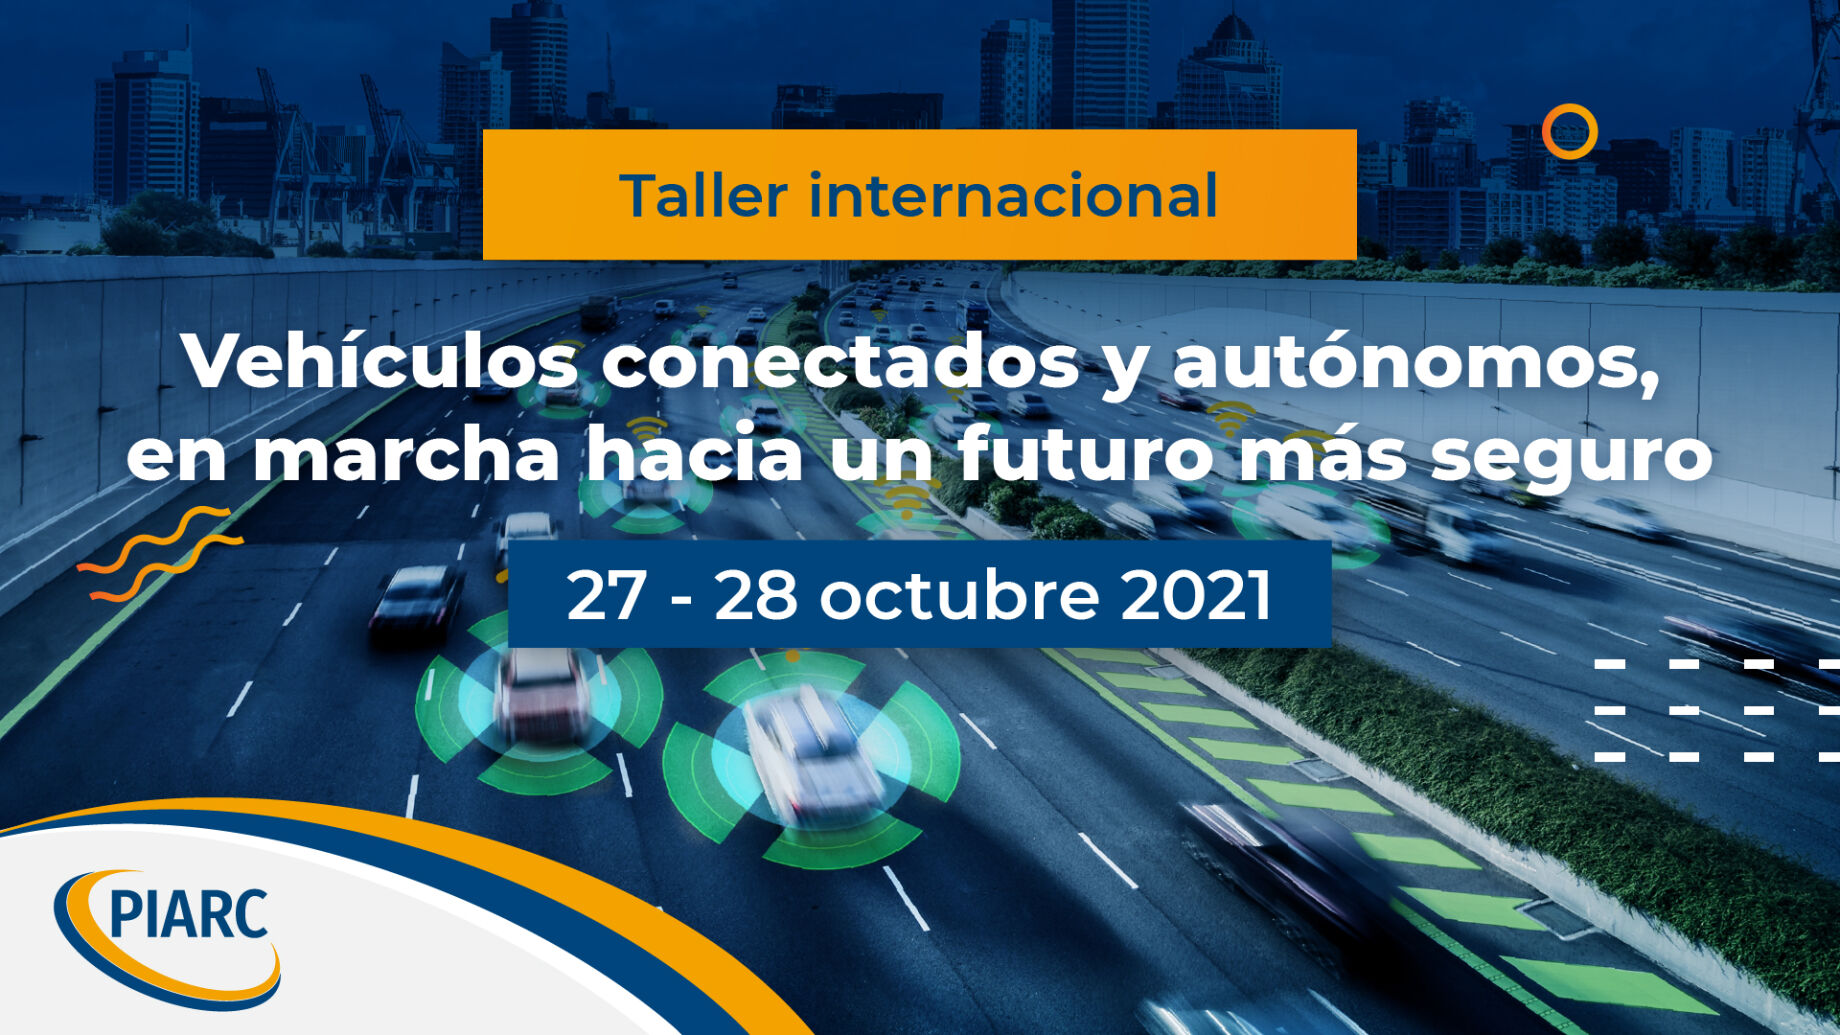 ¡Únase a nosotros y participe en este taller! Descubra la tecnología de los vehículos conectados y autónomos y cómo avanzar hacia un futuro más seguro